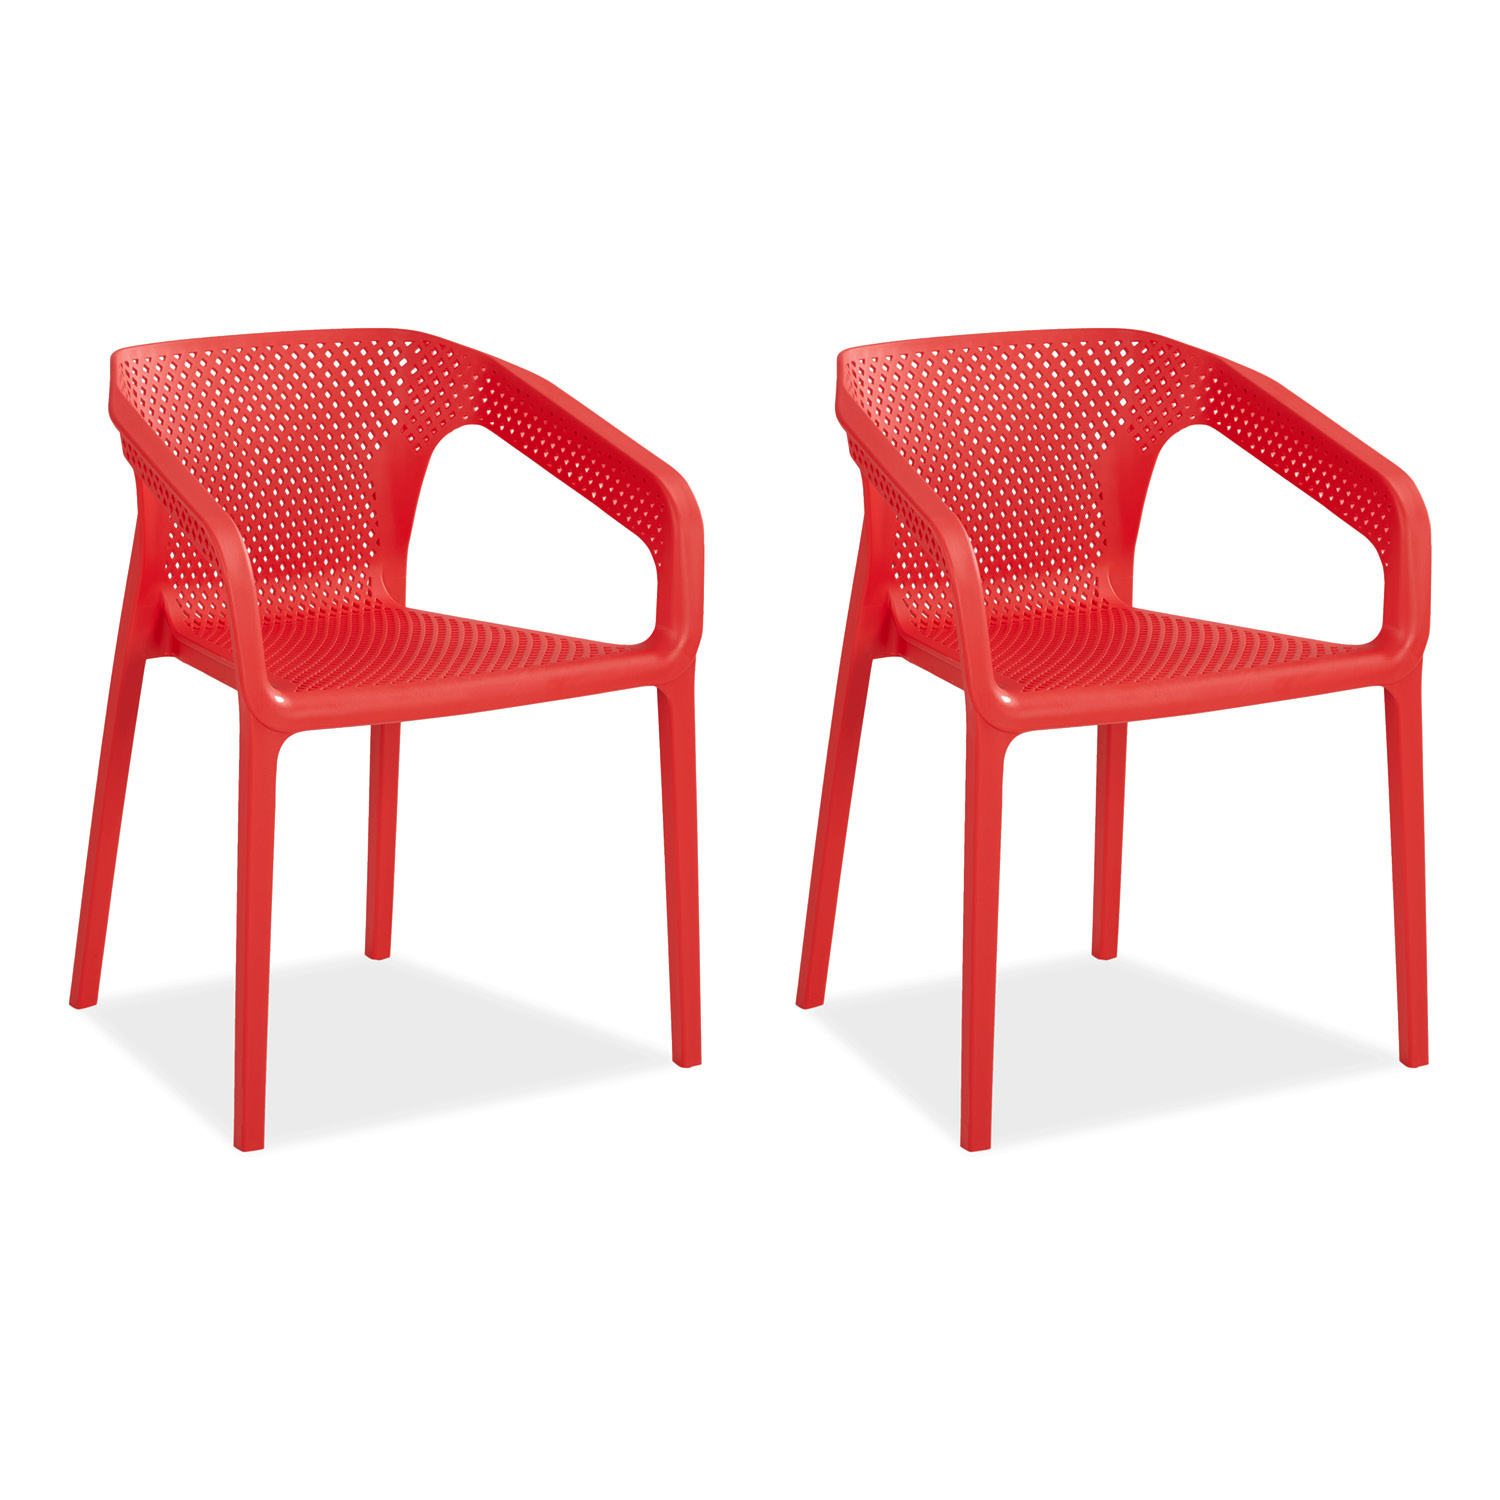 Chaise de jardin avec accoudoirs Rouge Lot de 2 Fauteuils de jardin Plastique Chaises exterieur Chaises empilable